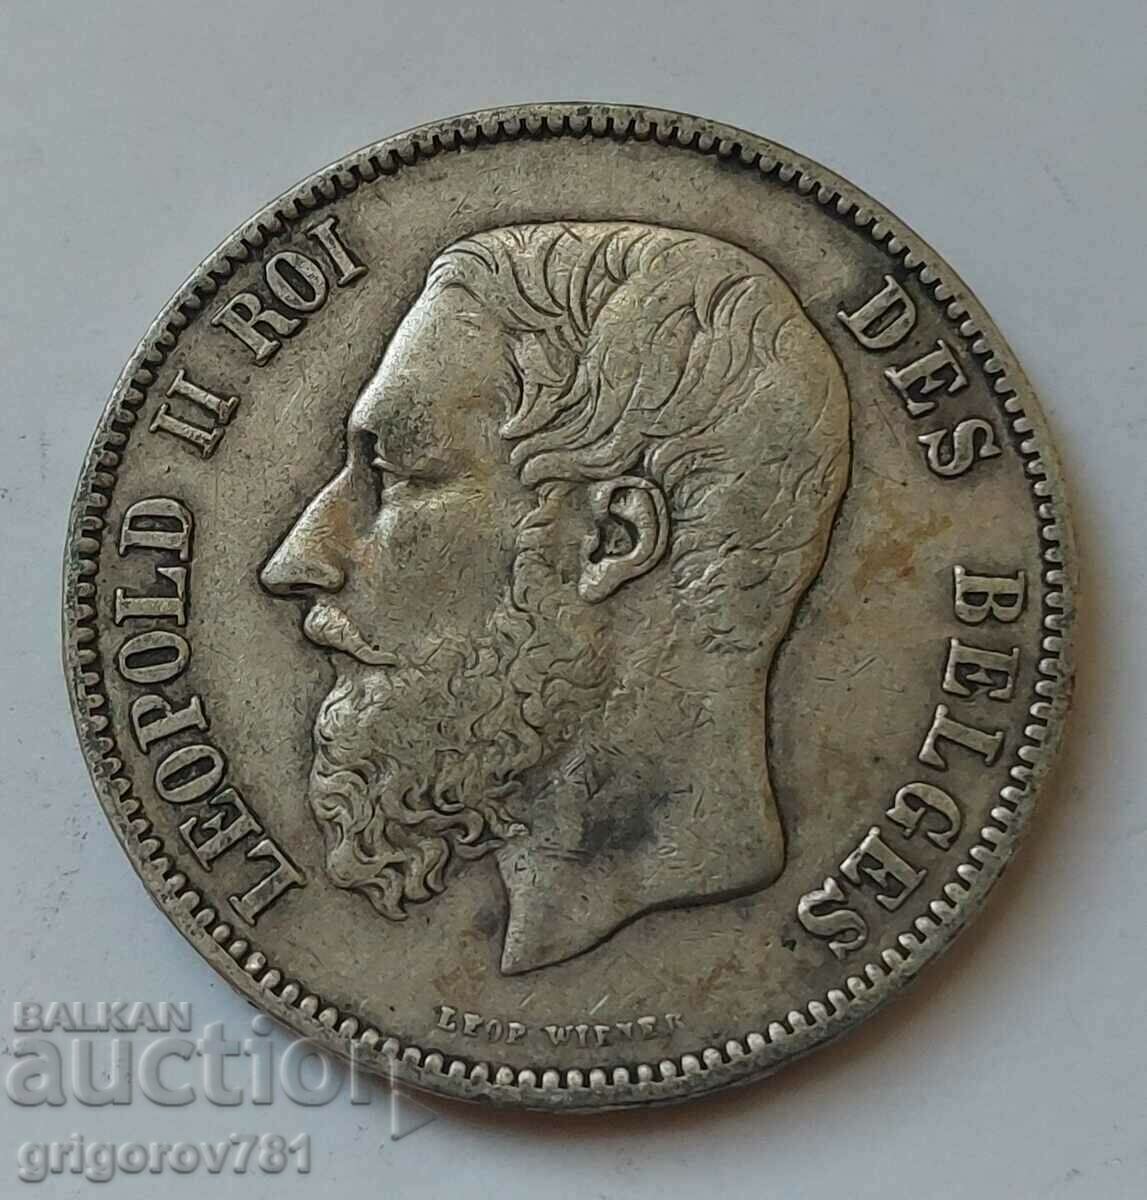 5 Francs Silver Belgium 1873 - Silver Coin #227